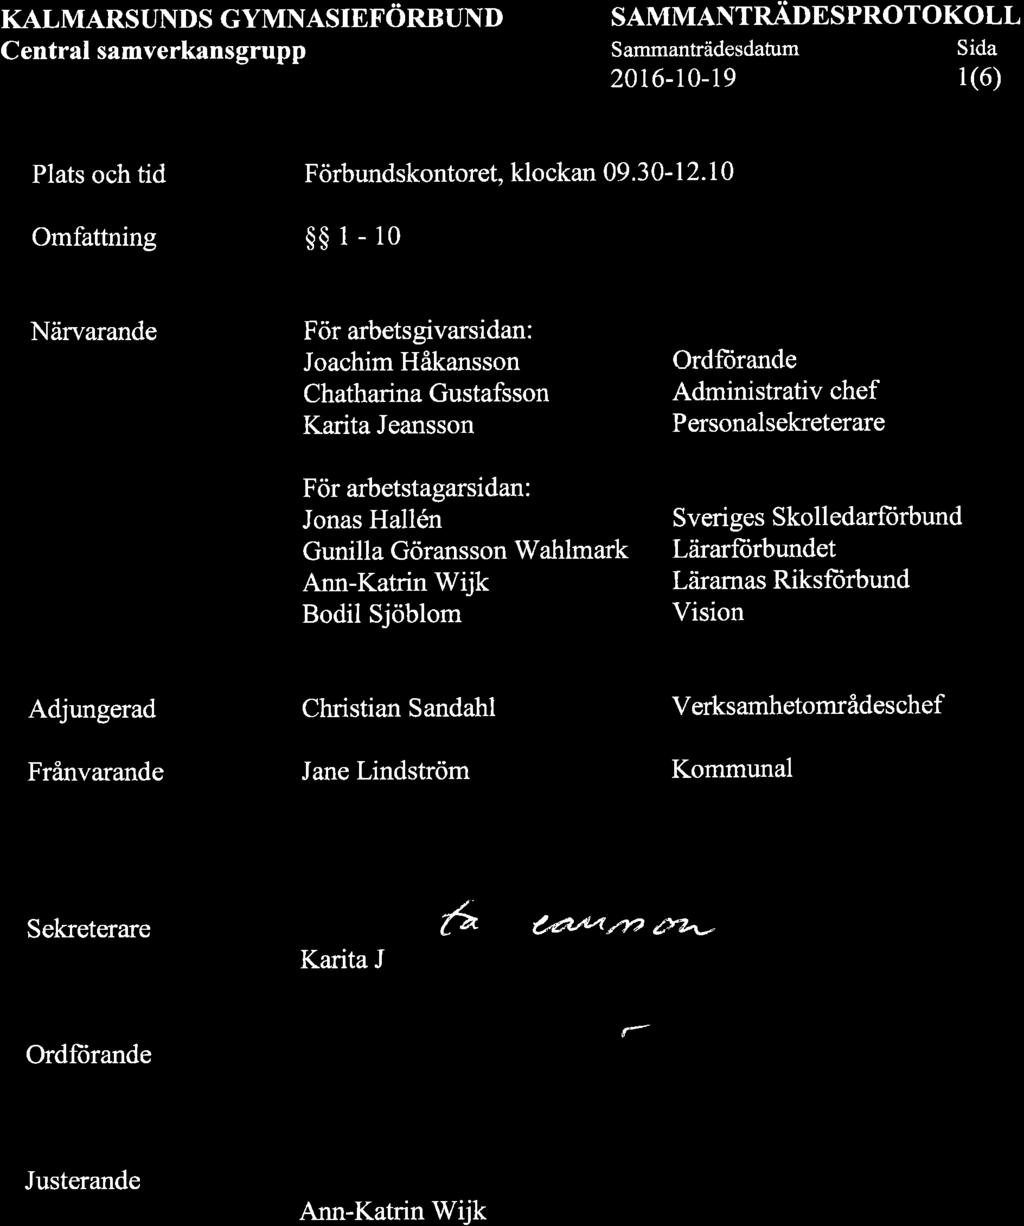 KALMARSUNDS GYMNASIEFÖRBUND Central samverkansgrupp SAMMANTRADESPROTOKOLL Sammanträdesdatum Sida 2016-10-19 1(6) t Plats och tid Omfattning Förbundskontoret,